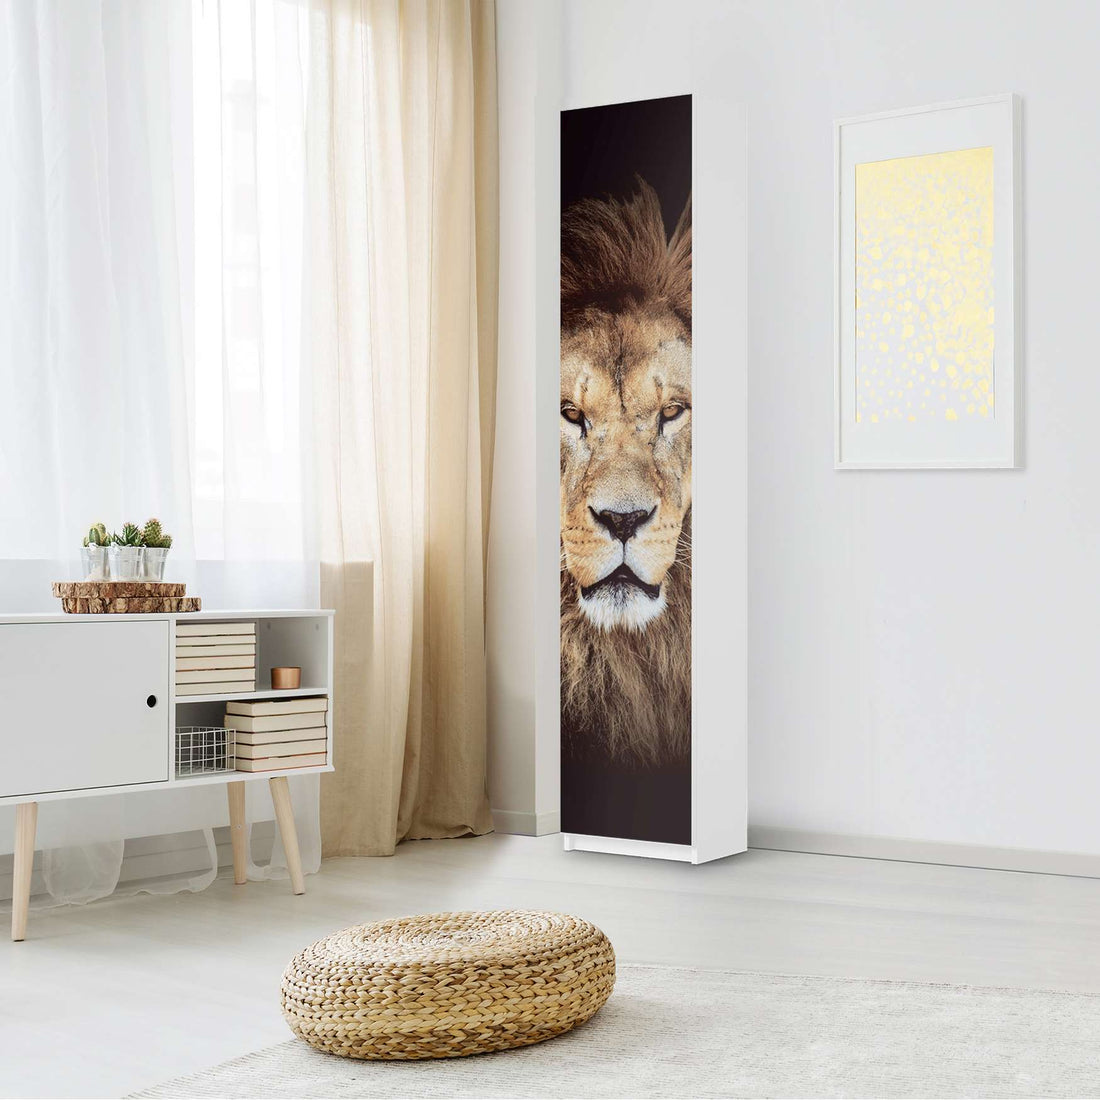 Klebefolie Wild Eyes - IKEA Pax Schrank 236 cm Höhe - 1 Tür - Schlafzimmer